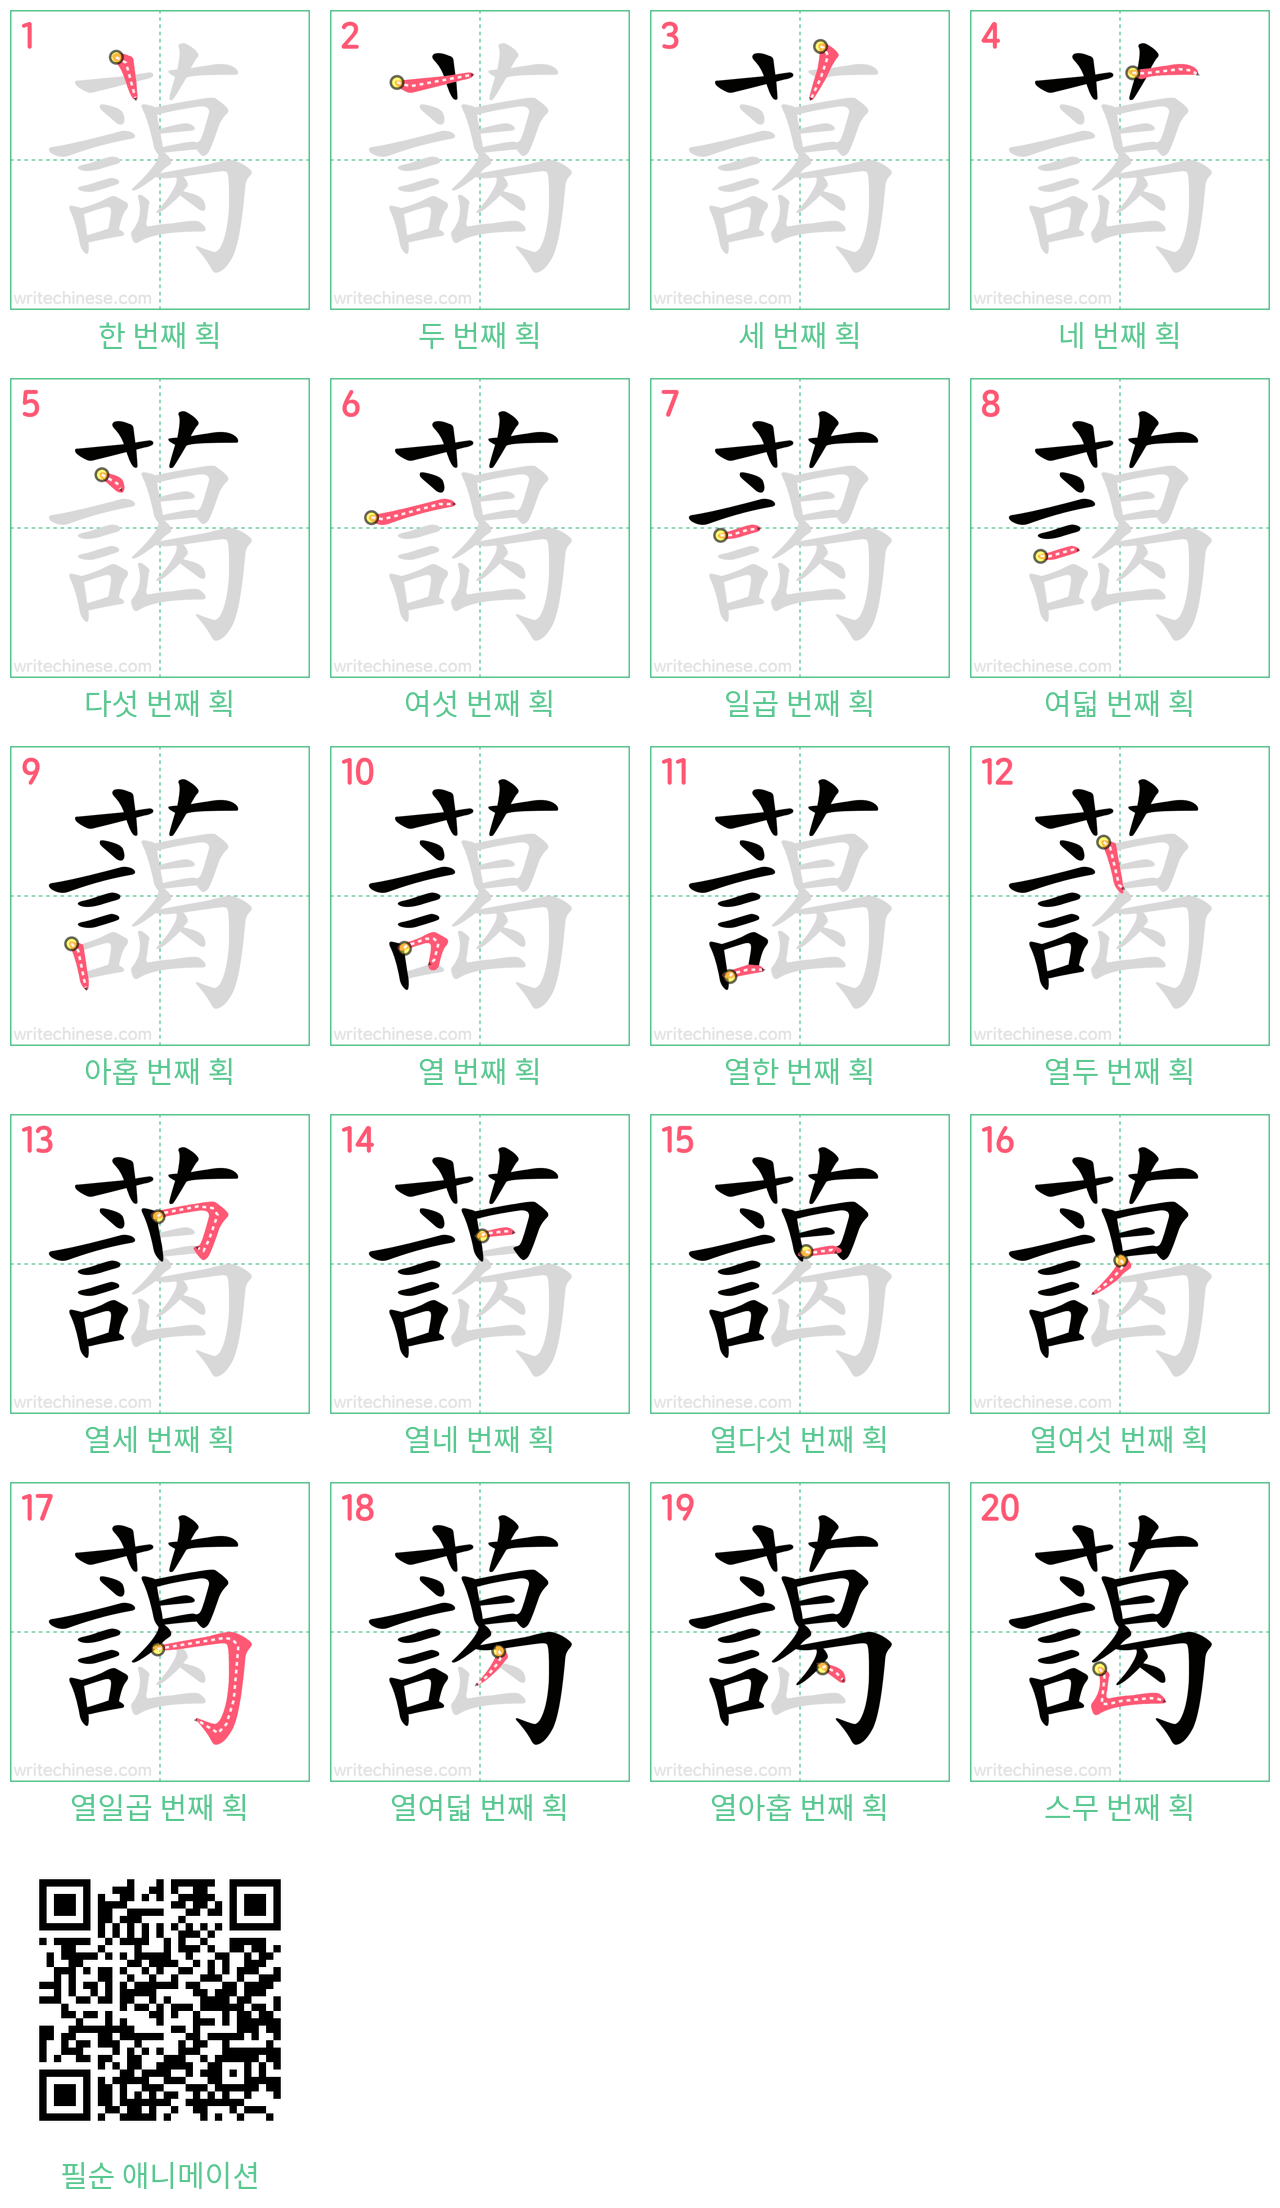 藹 step-by-step stroke order diagrams